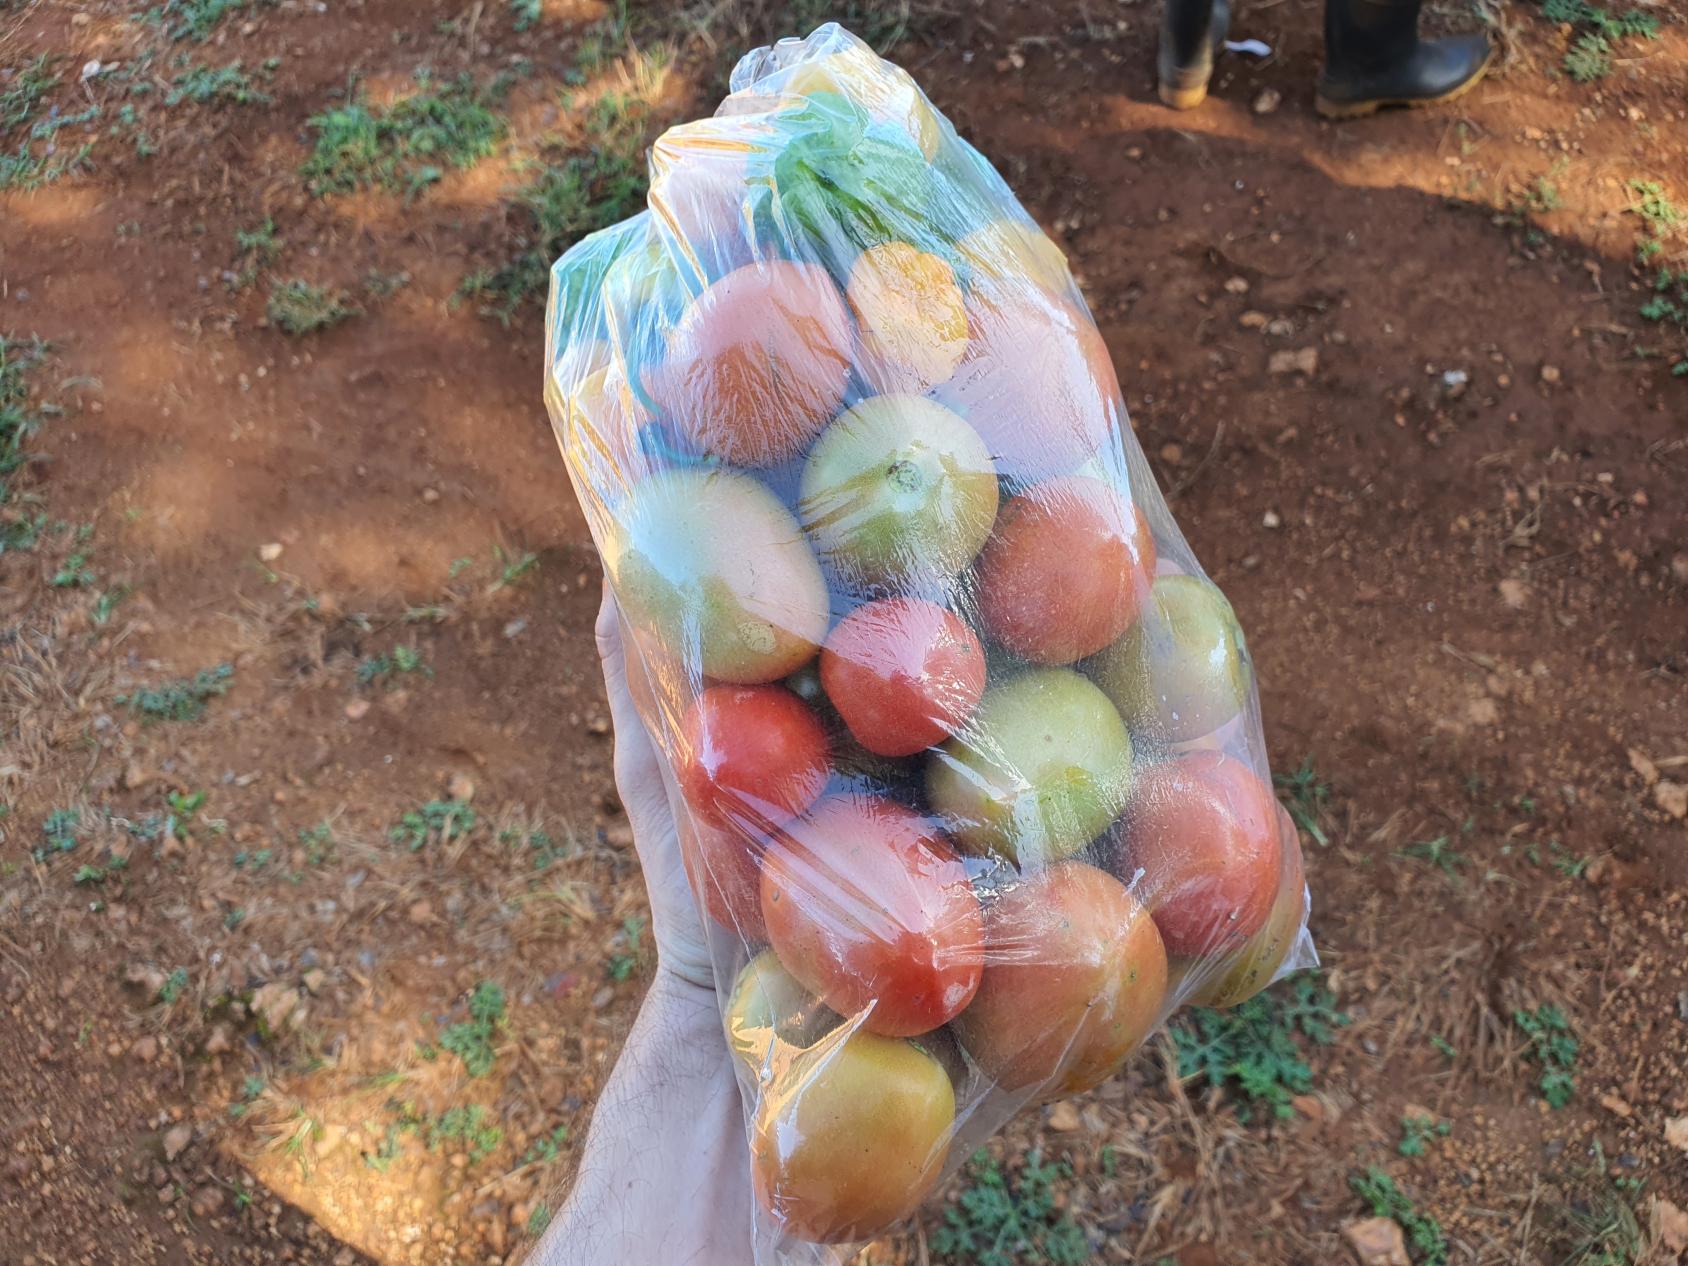 Una mano sosteniendo una bolsa llena de tomates y otras frutas.